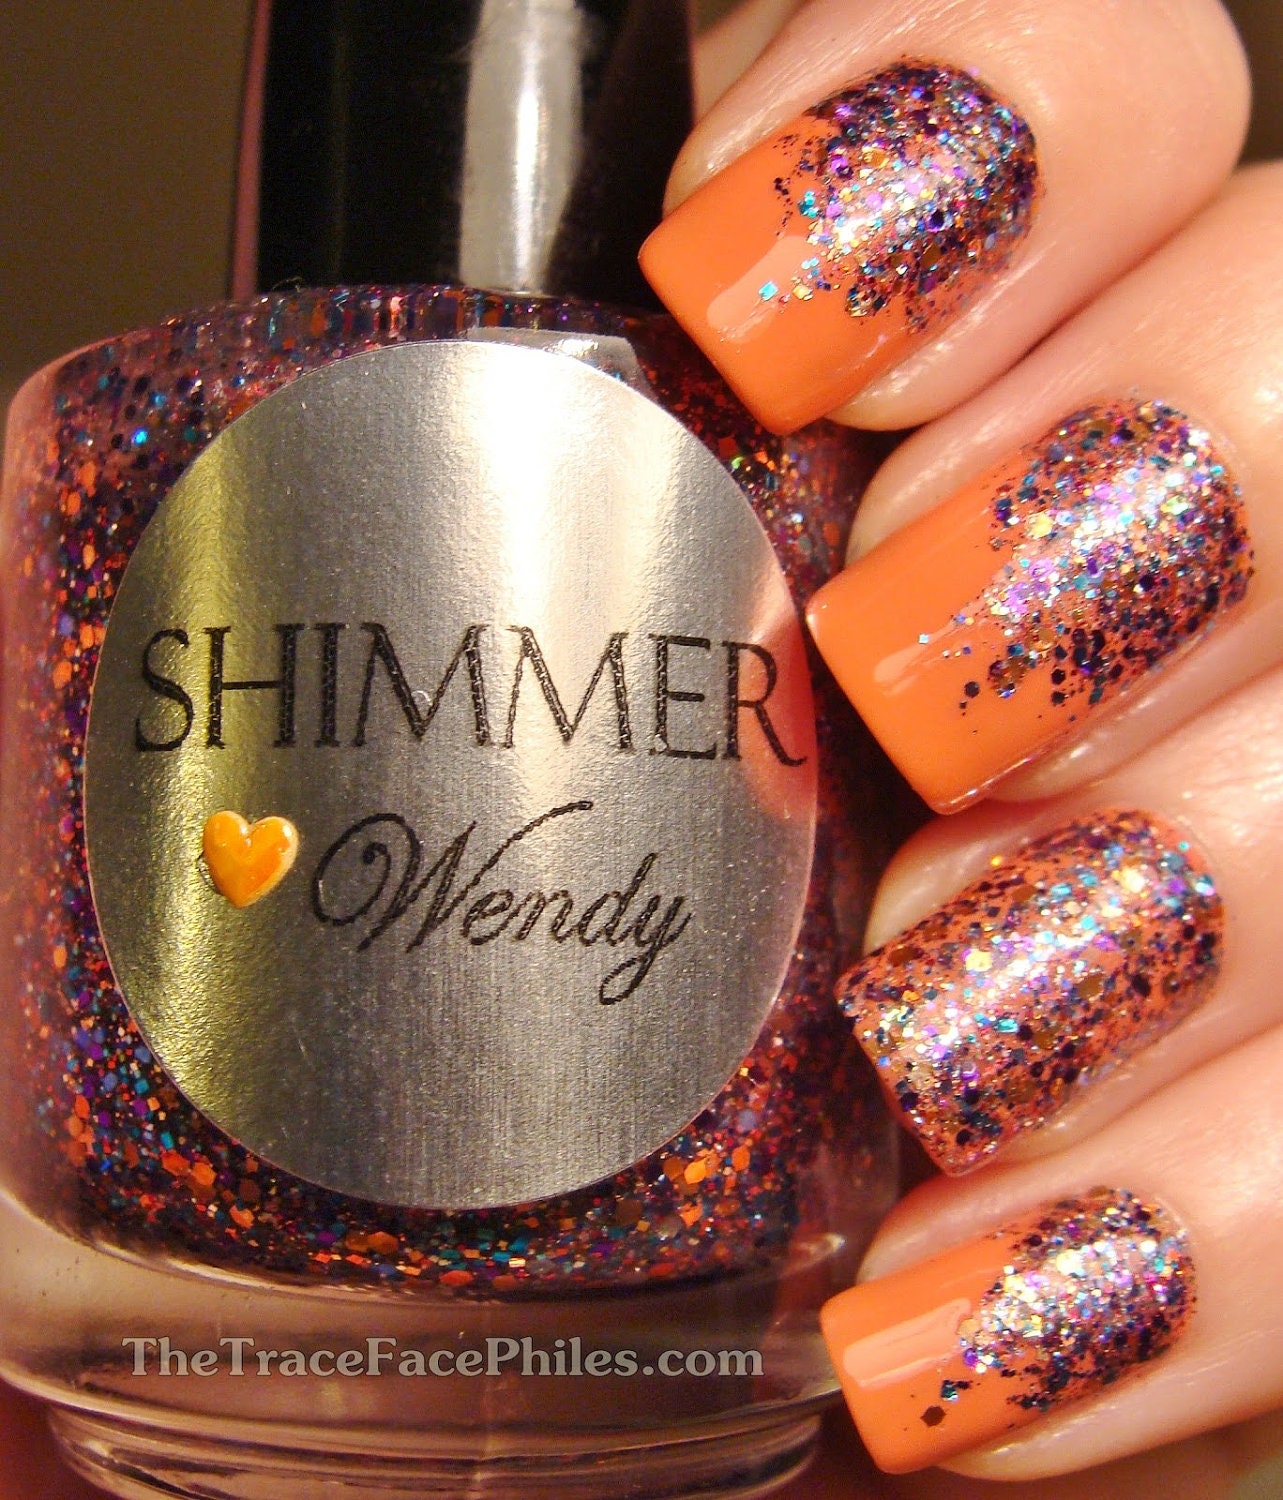 Shimmer Nail Polish - Wendy